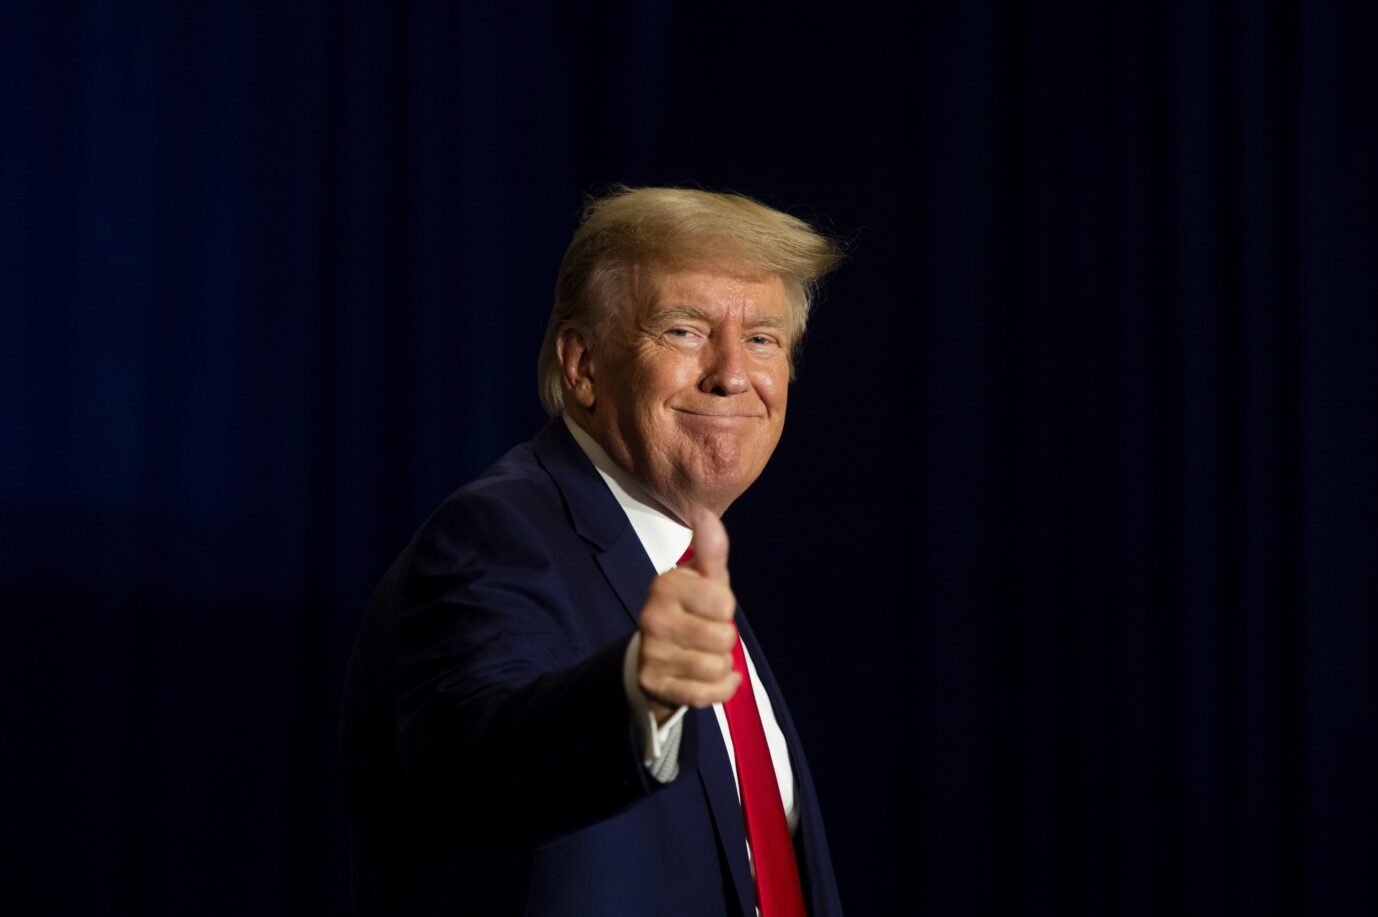 Der frühere US-Präsident Donald Trump, Republikaner, zeigt die Daumen hoch-Geste. Nun gewinnt er einen Prozeß gegen eine Pornodarstellerin.